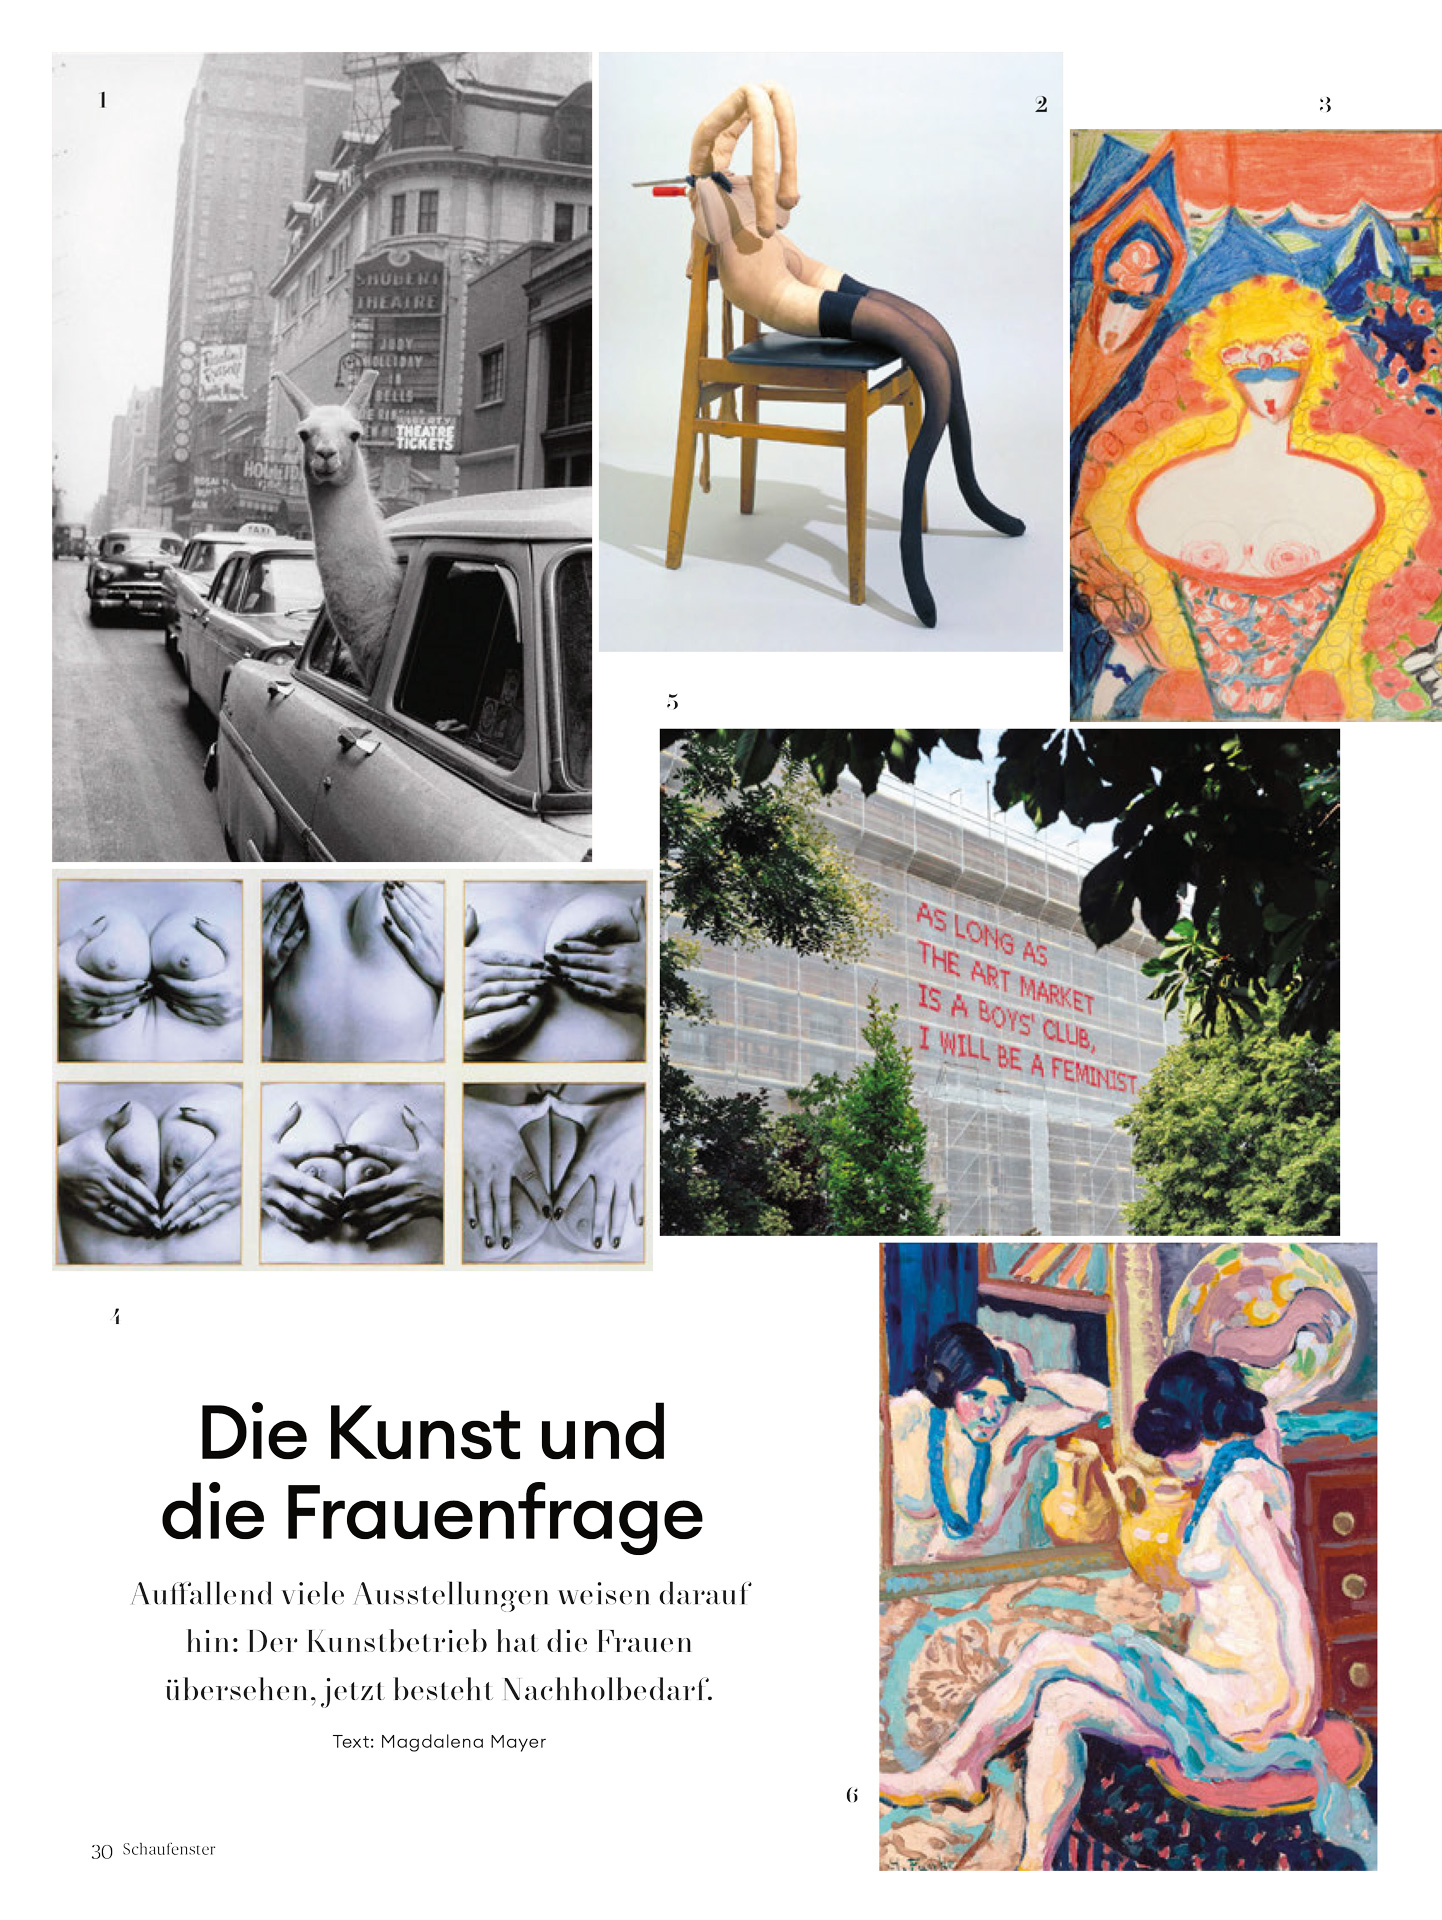 Die Presse Schaufenster – Die Kunst und die Frauenfrage – 29/03/19